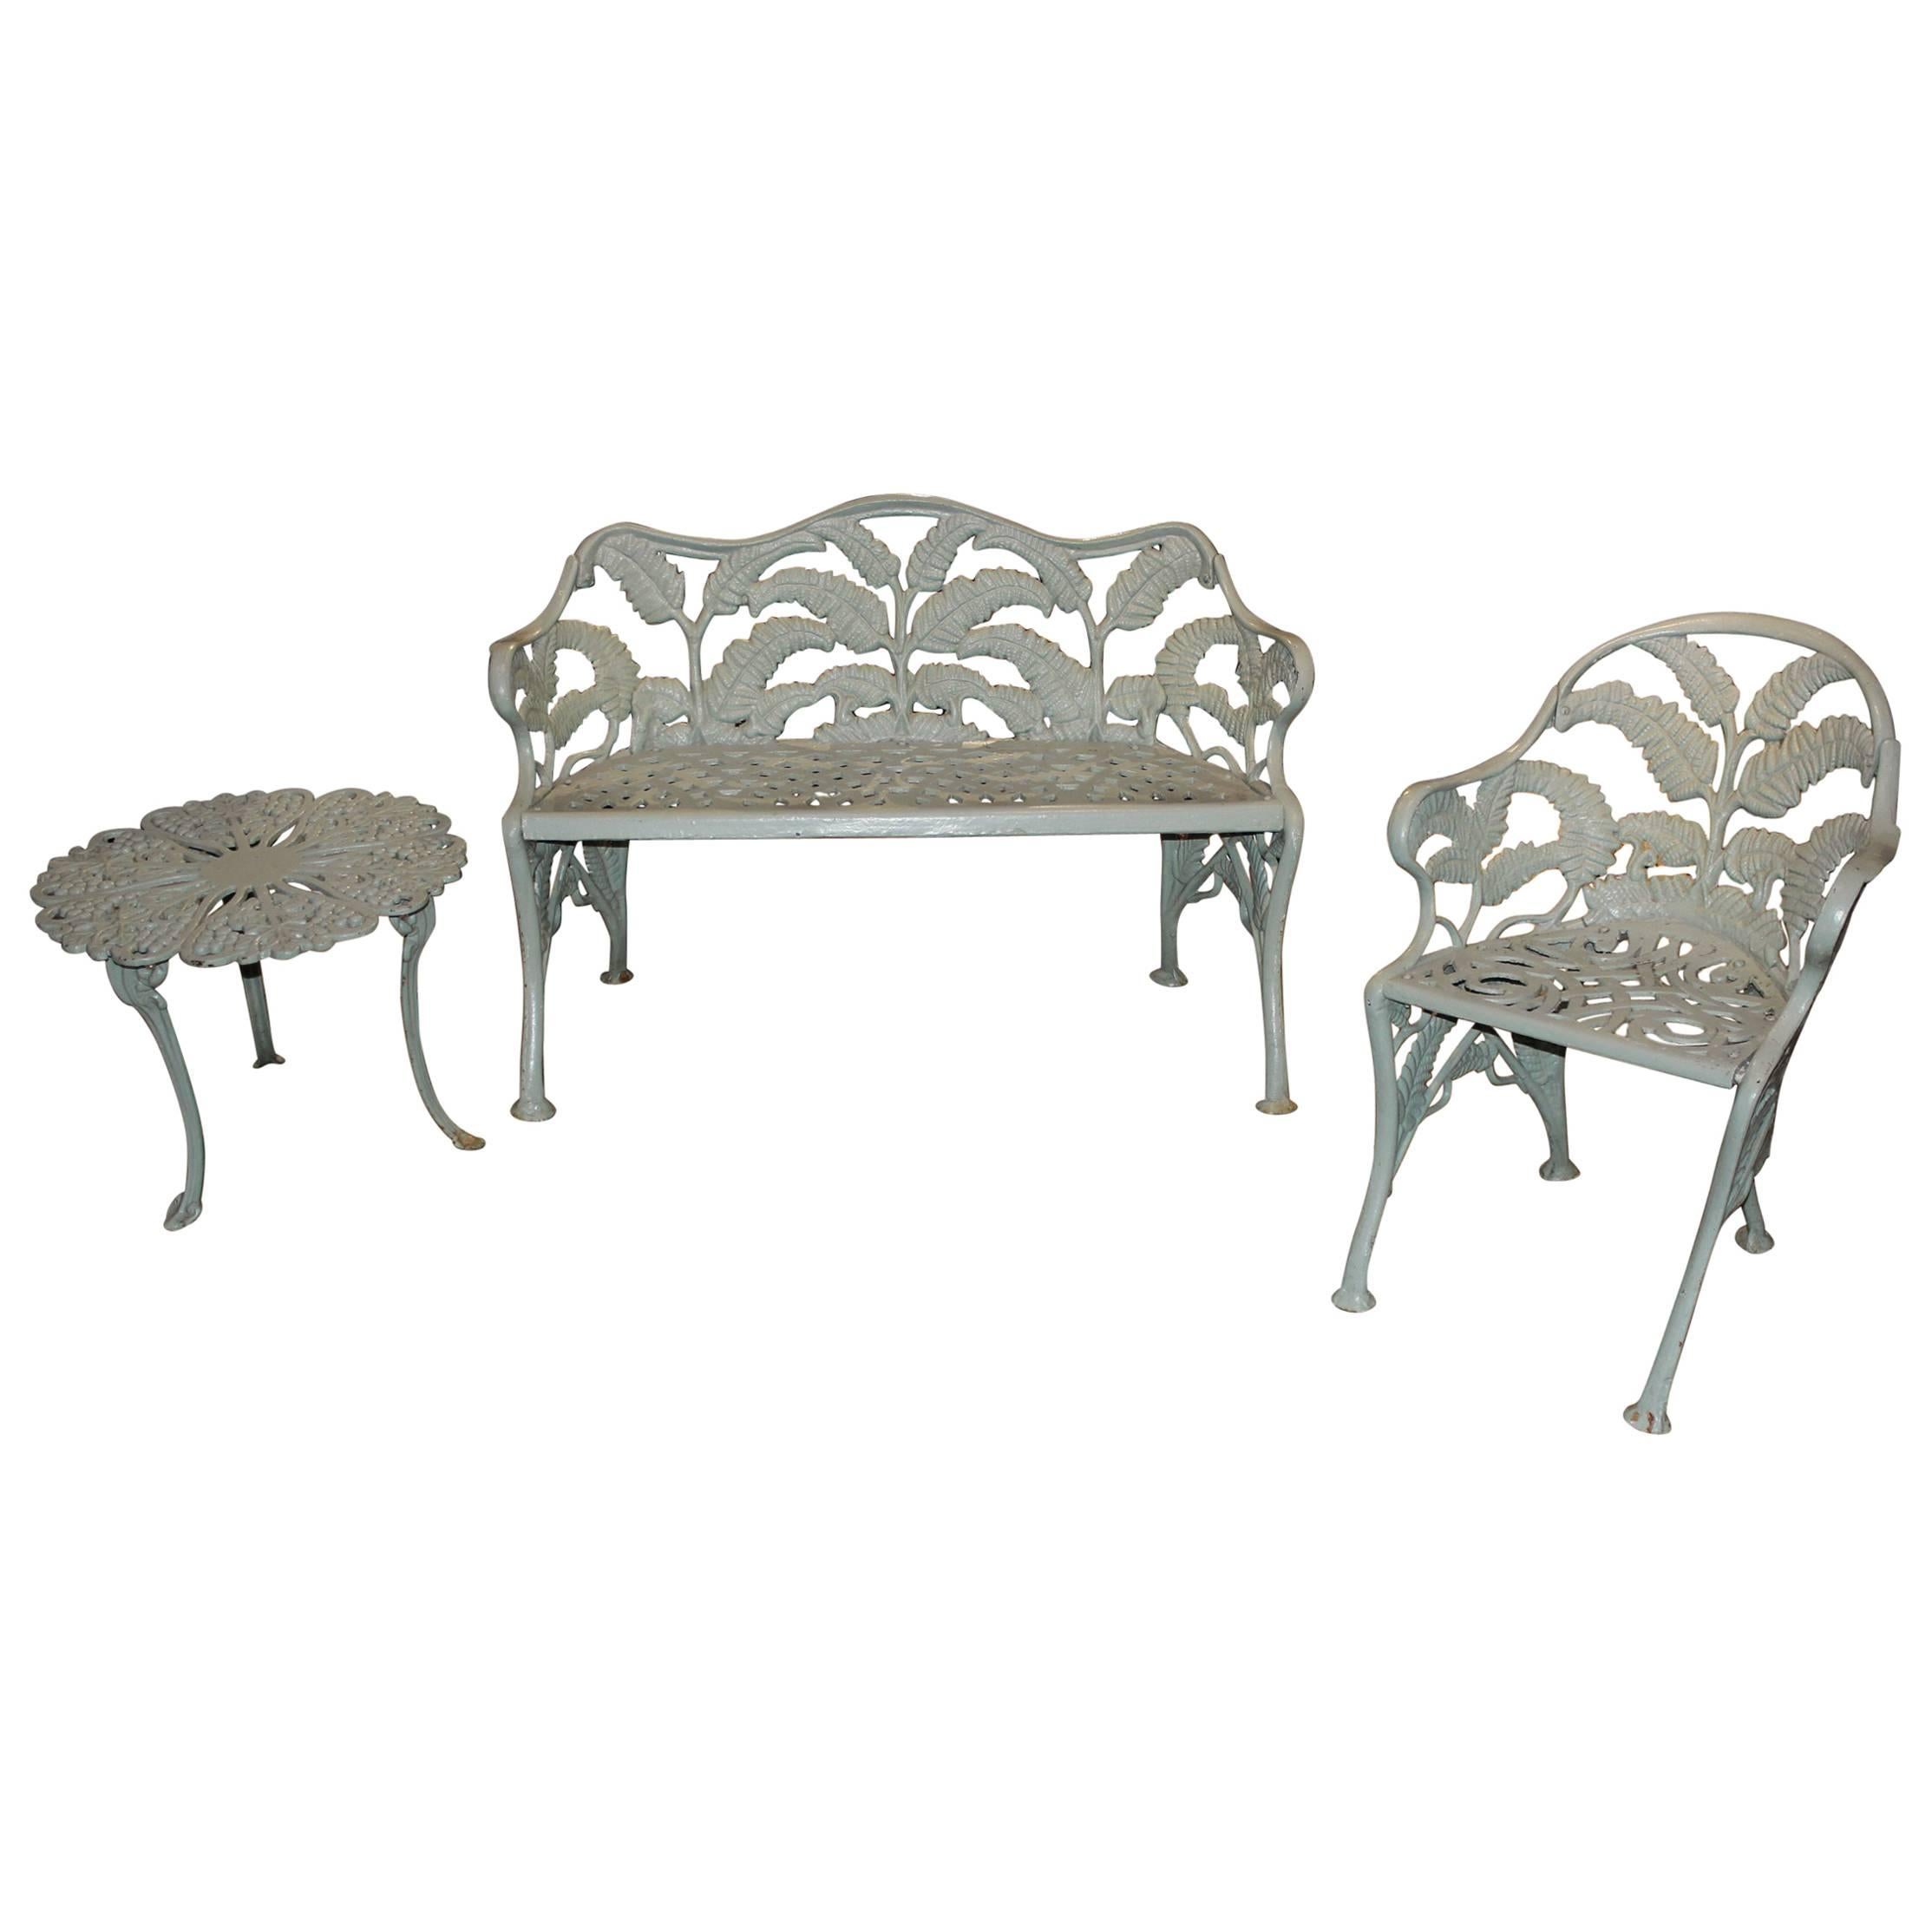 Three-Piece Set of Cast Iron Garden Furniture in Celadon Green